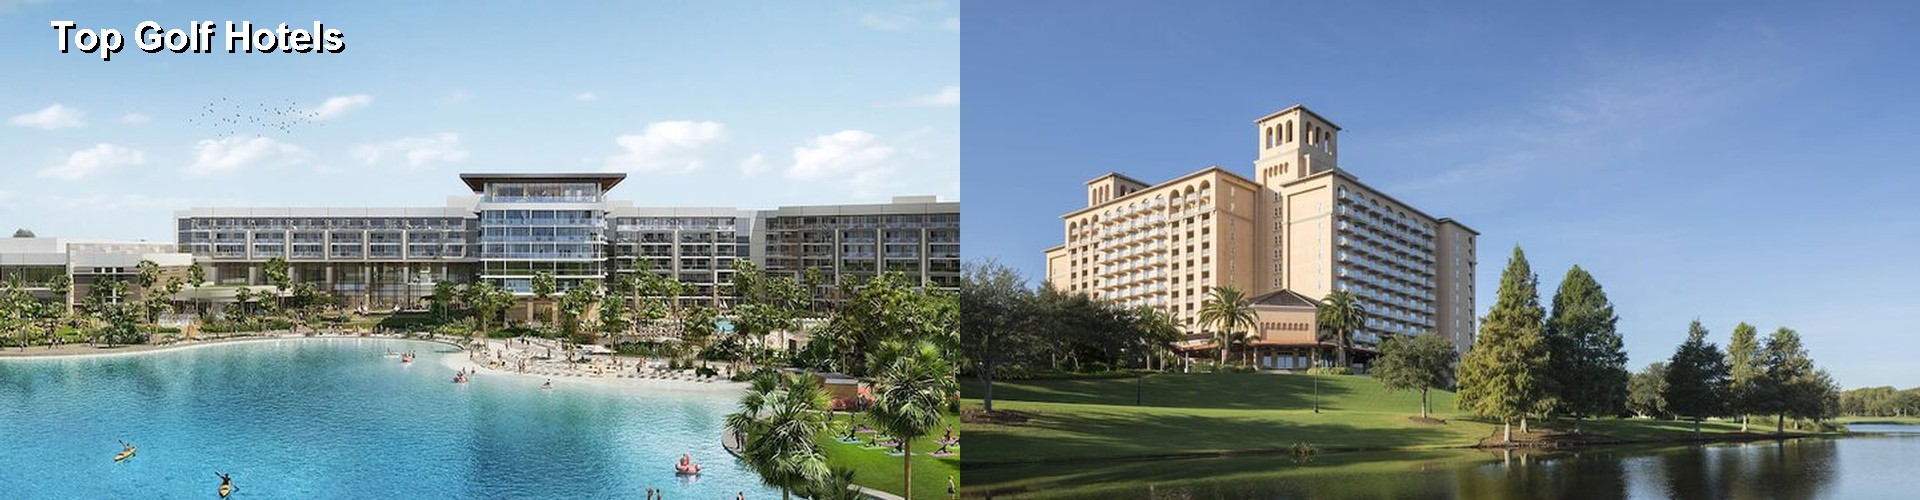 5 Best Hotels near Top Golf